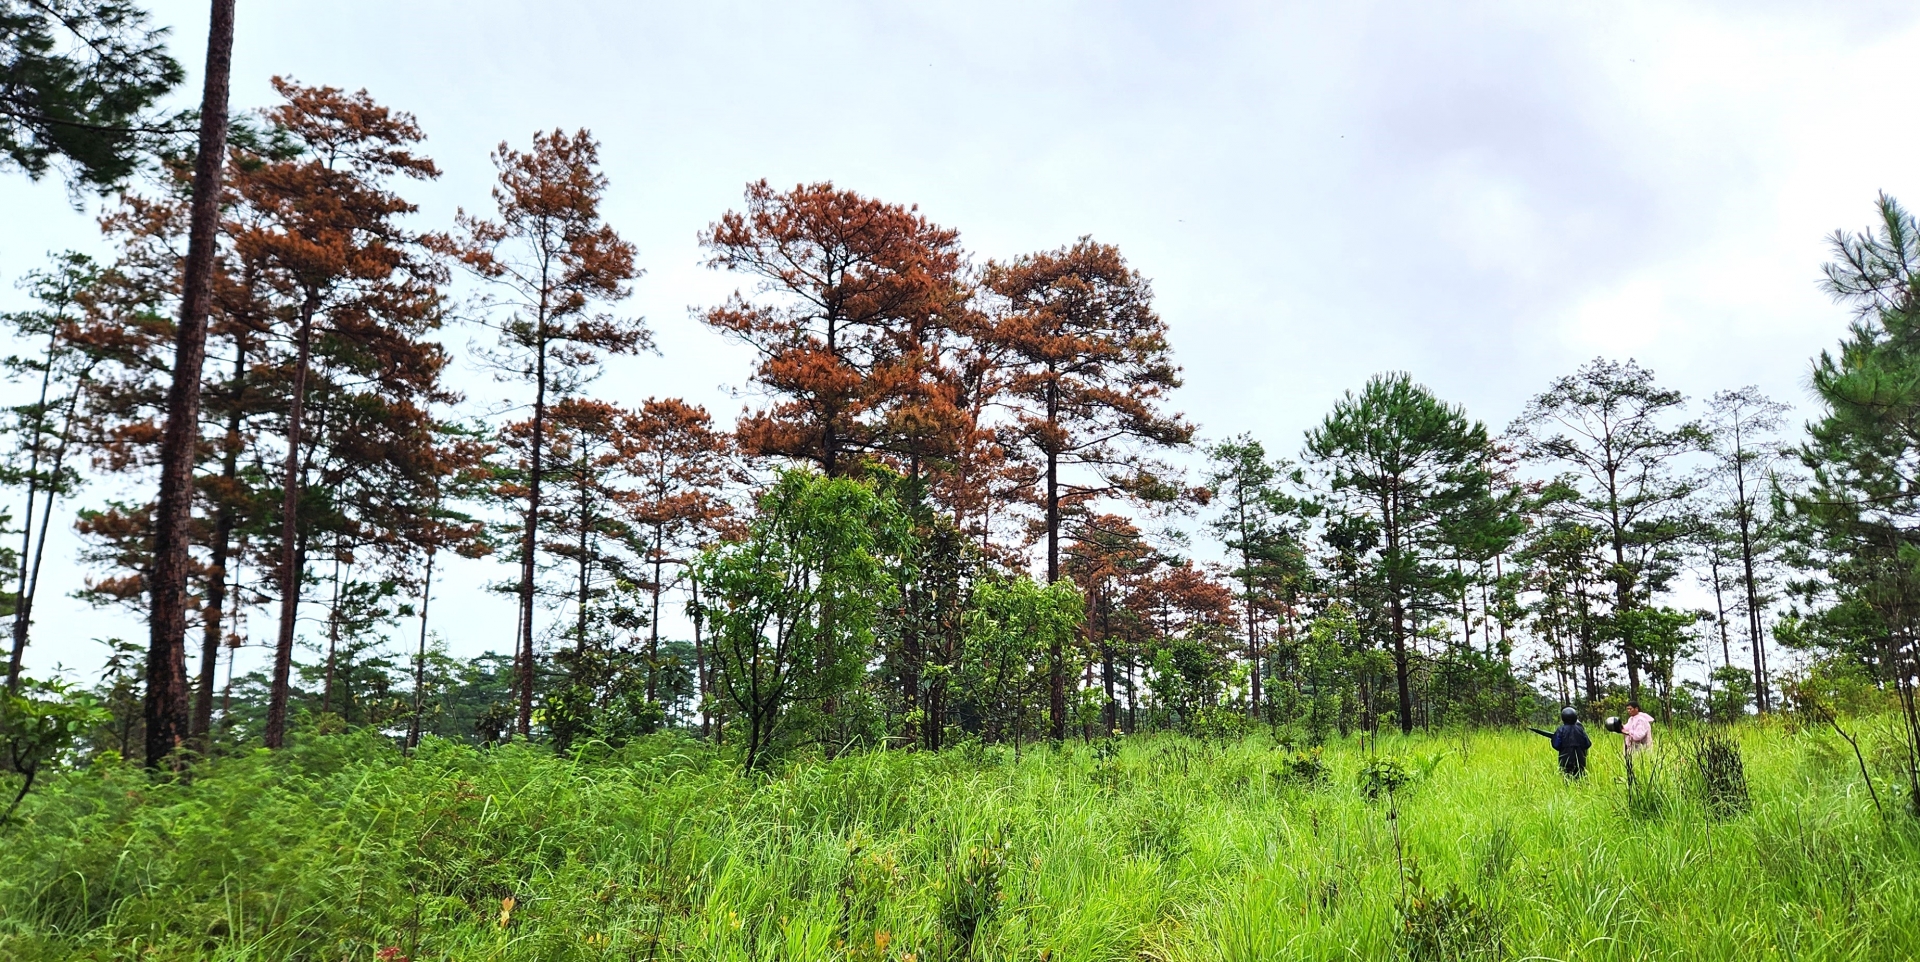 Thời gian qua, tình trang phá rừng chiếm đất cũng diễn ra phức tại lâm phần do Công ty Hà Phong quản lý, bảo vệ